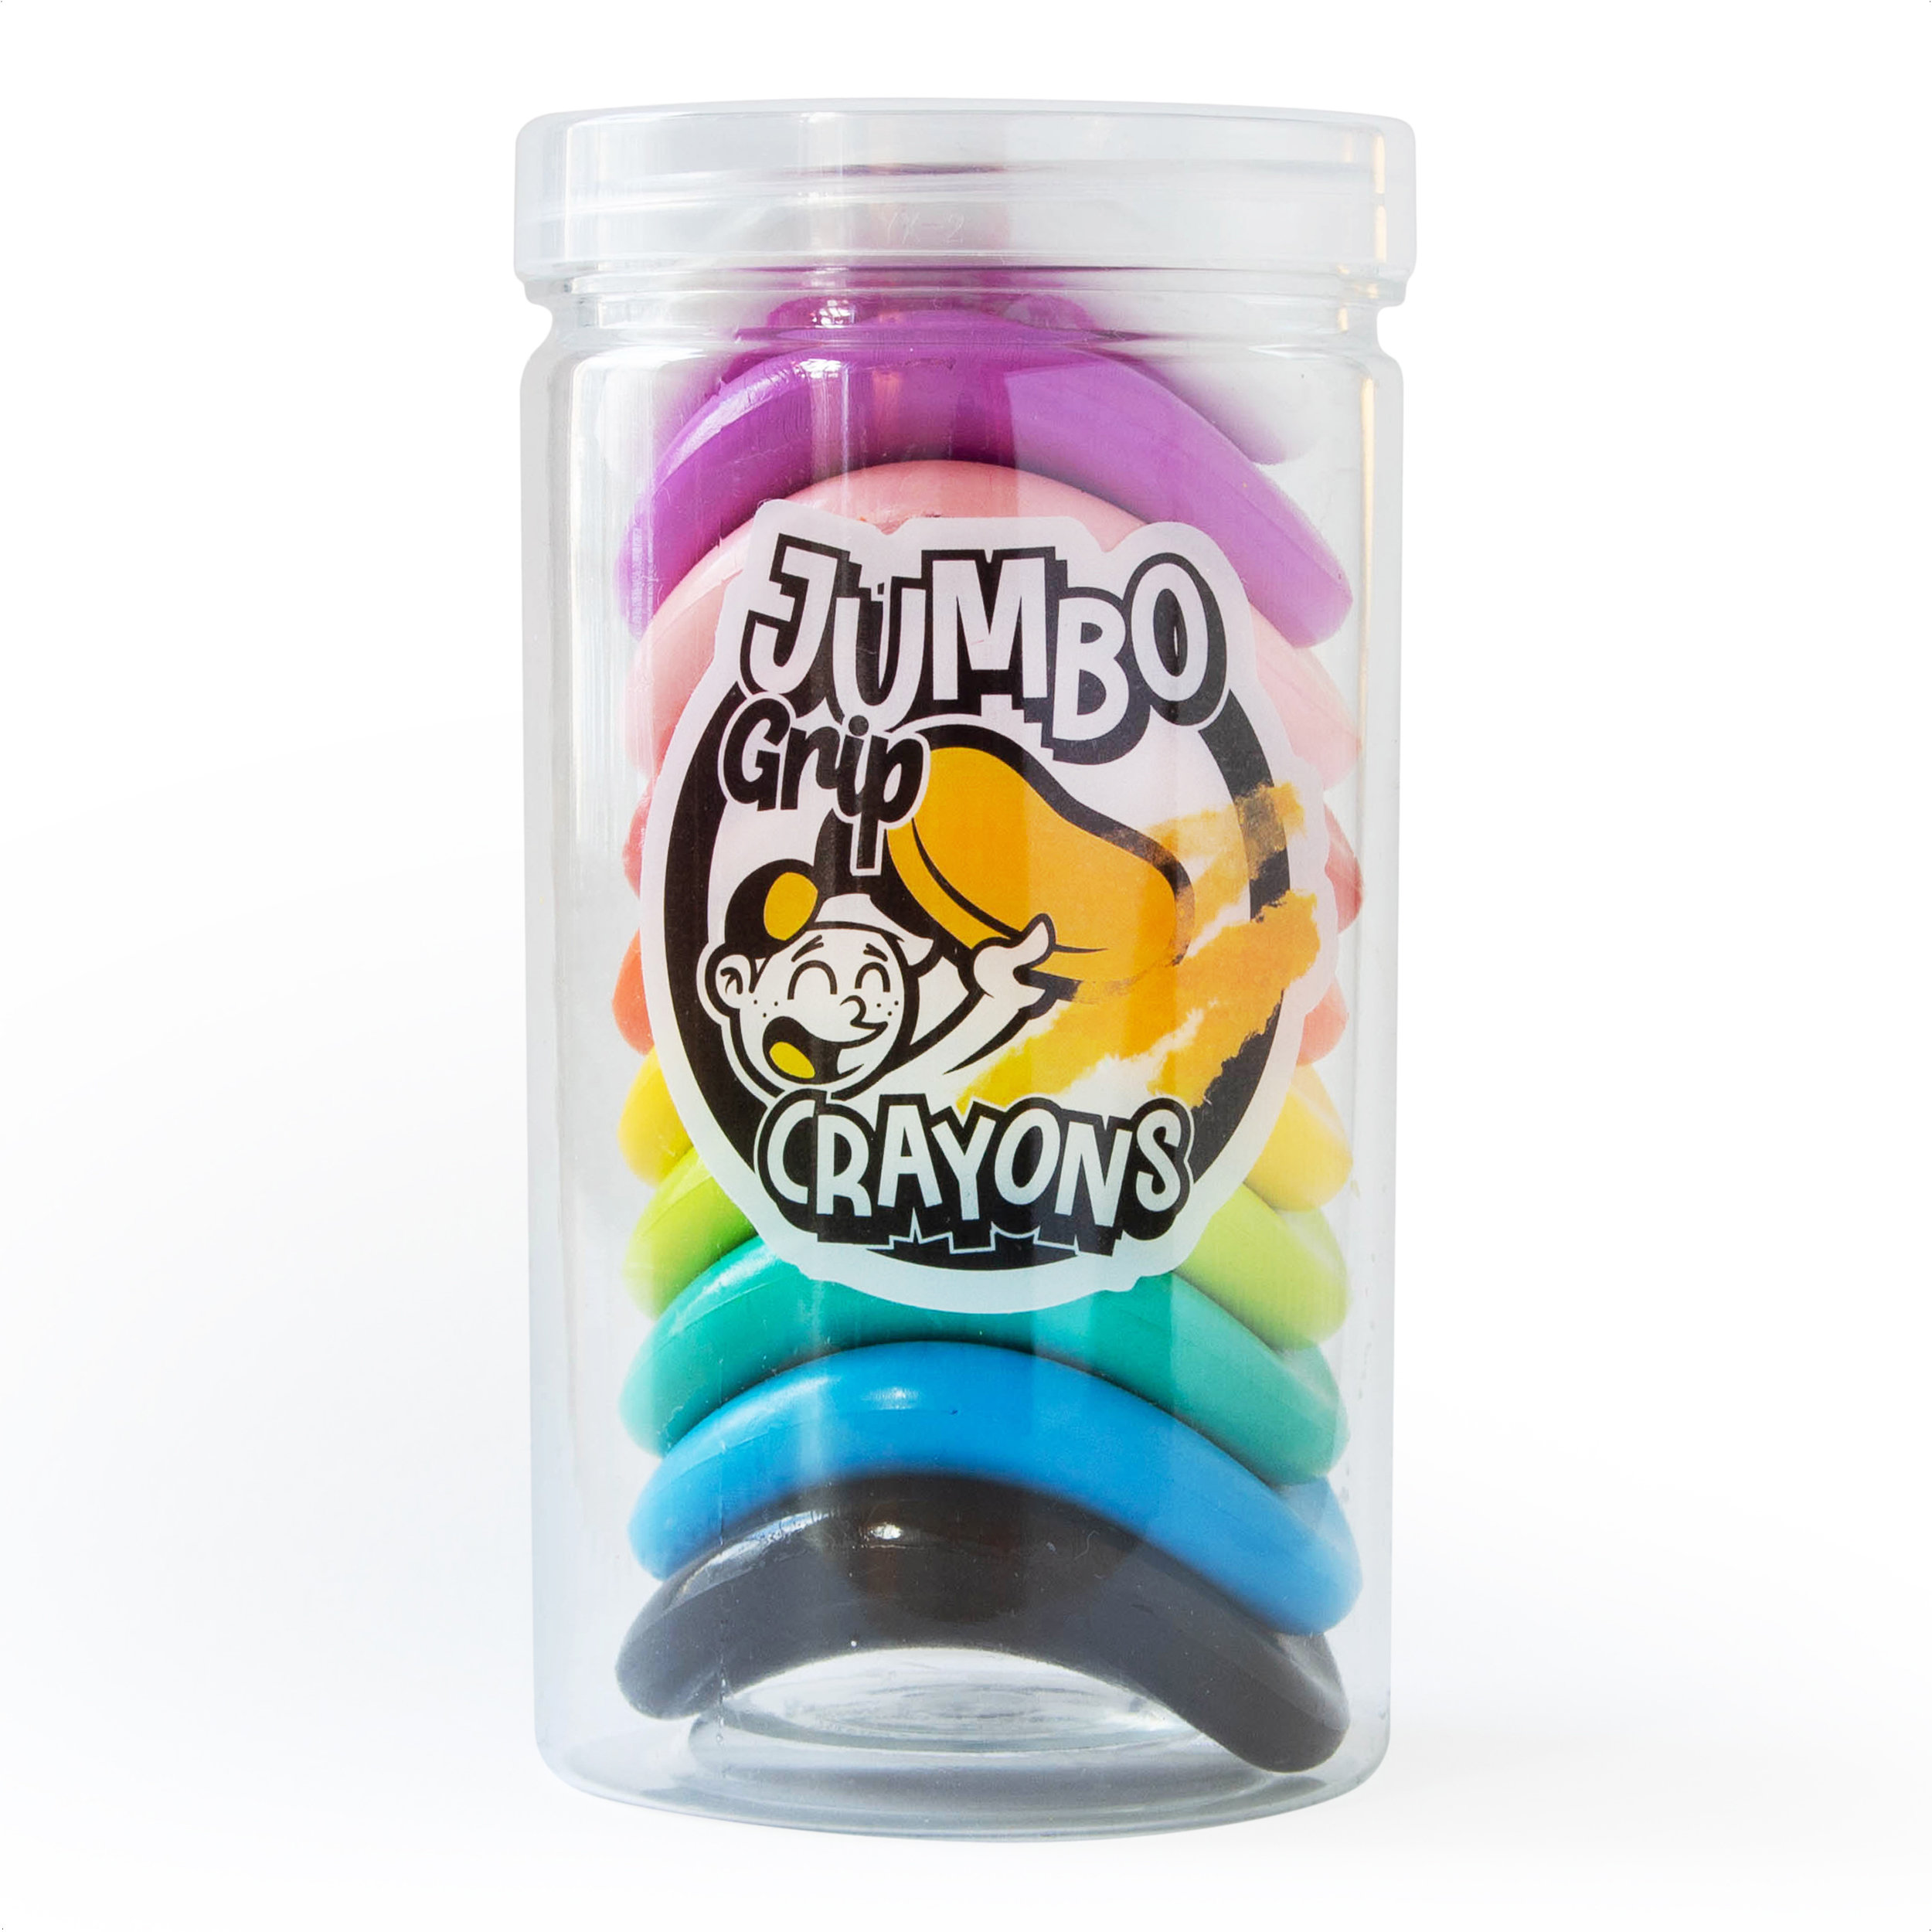 Jumbo grip crayons in packaging